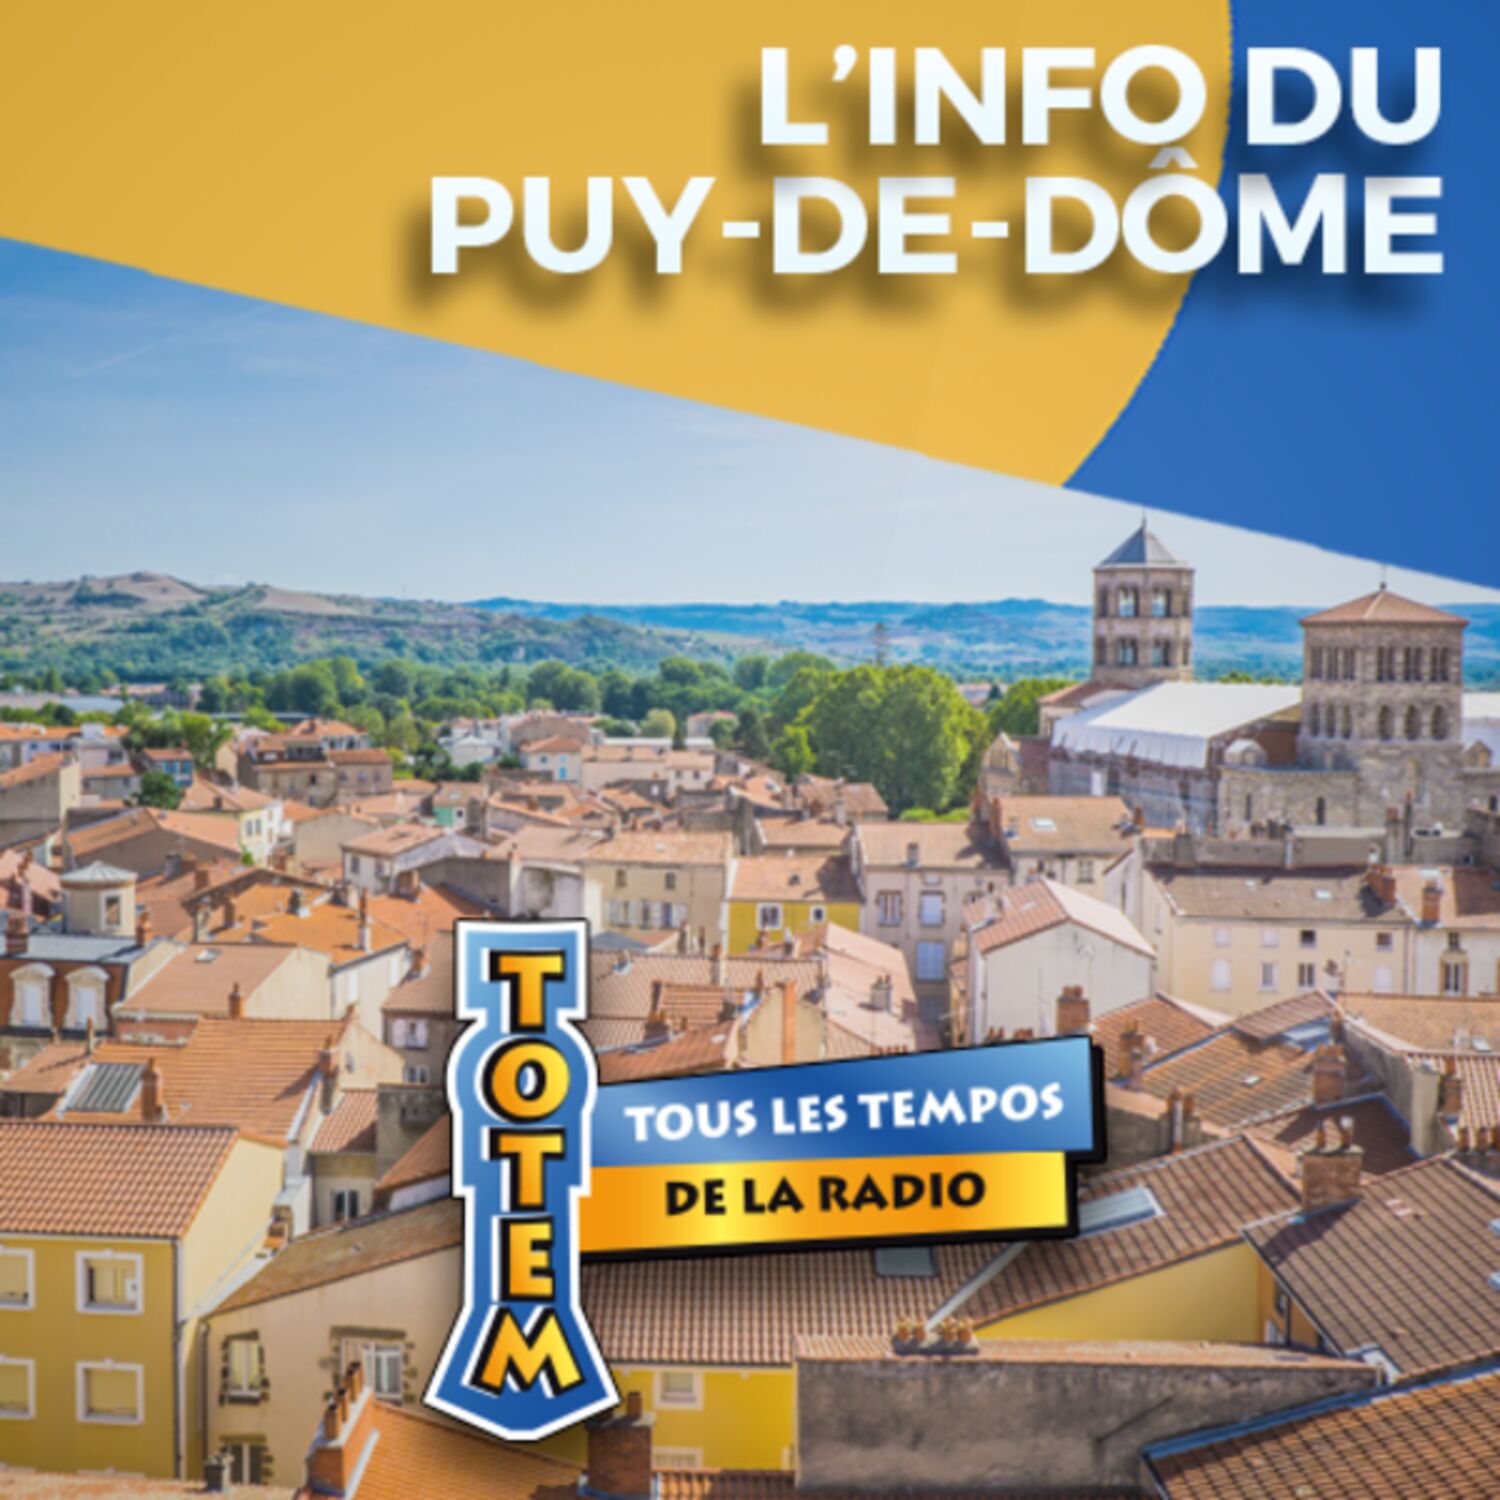 L'info du Puy-de-Dôme du 09/05/23 à 08h30